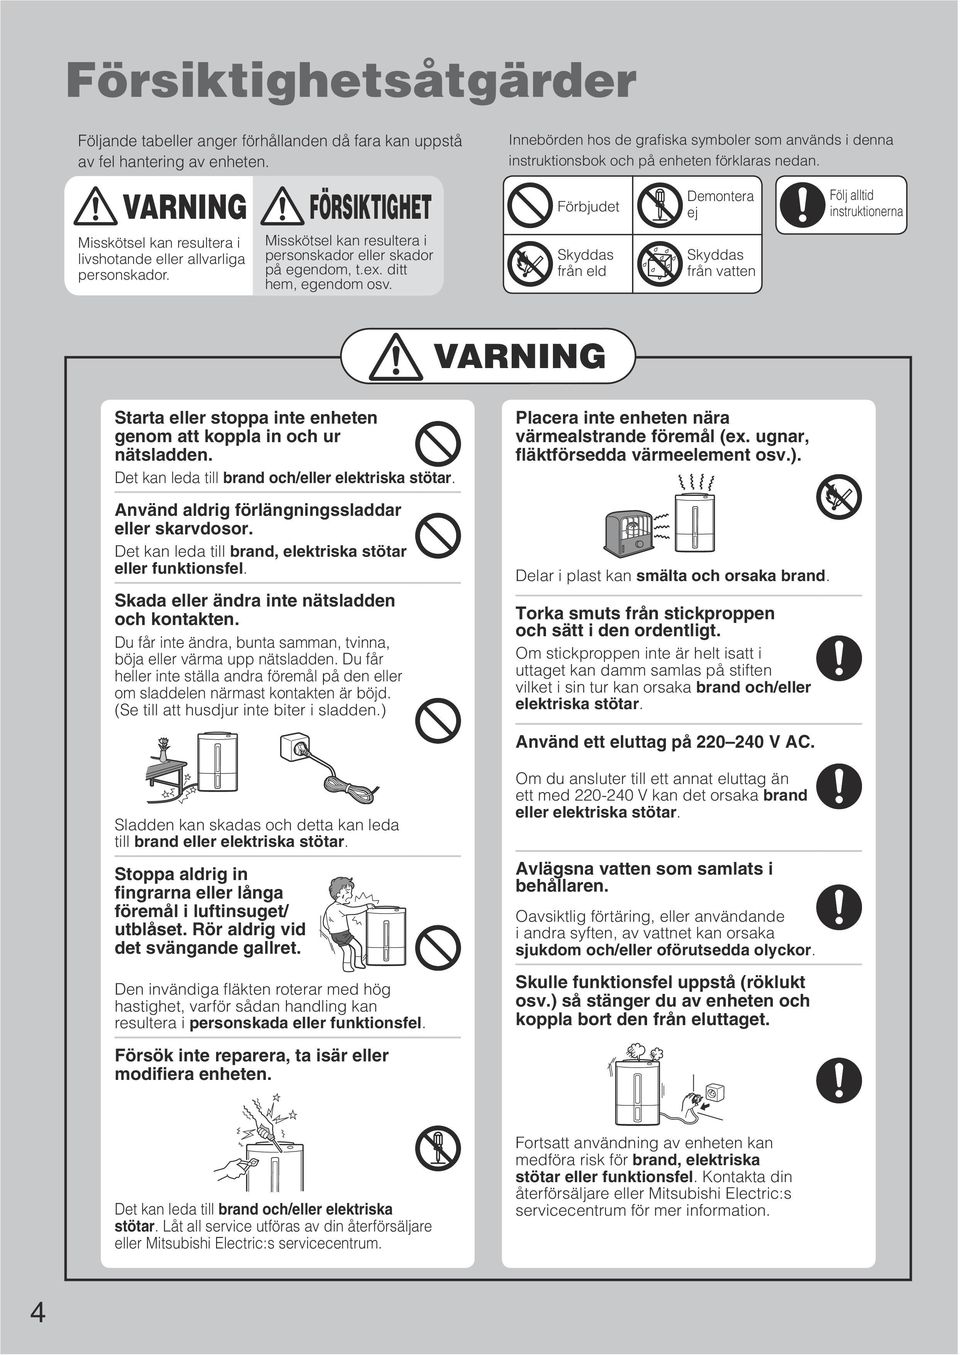 Förbjudet Demontera ej Skyddas från eld Skyddas från vatten Följ alltid instruktionerna VARNING Starta eller stoppa inte enheten genom att koppla in och ur nätsladden.